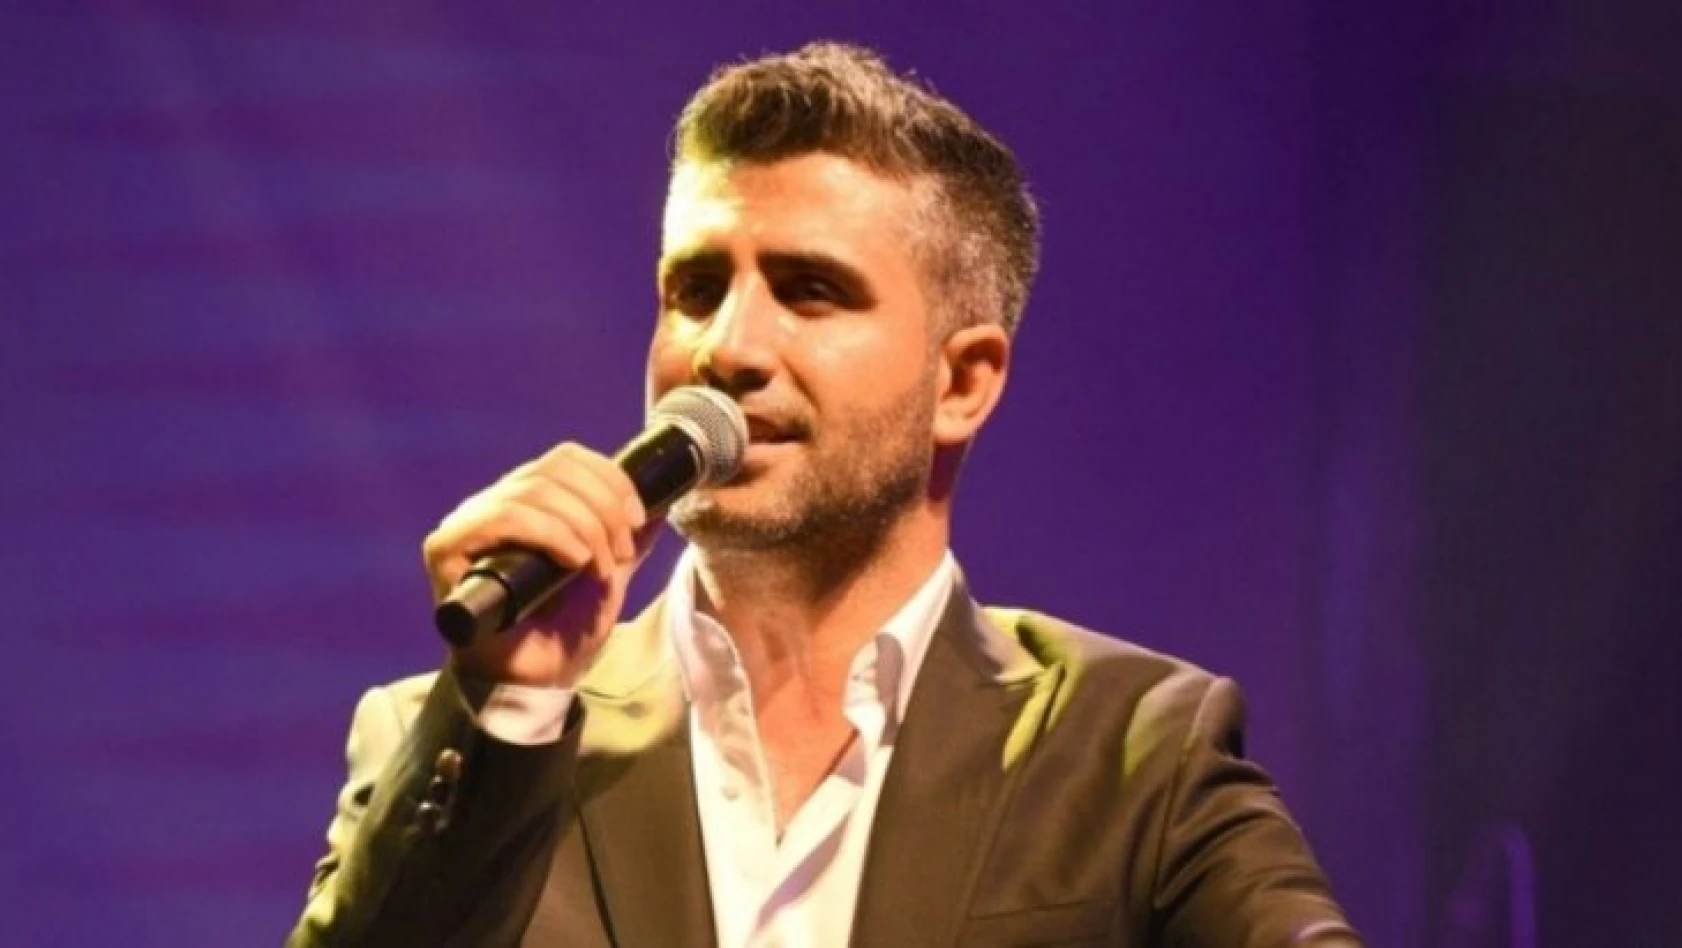 Hülya Avşar'ın yılbaşında sahnedeki partneri Seccad Mehmedi oldu